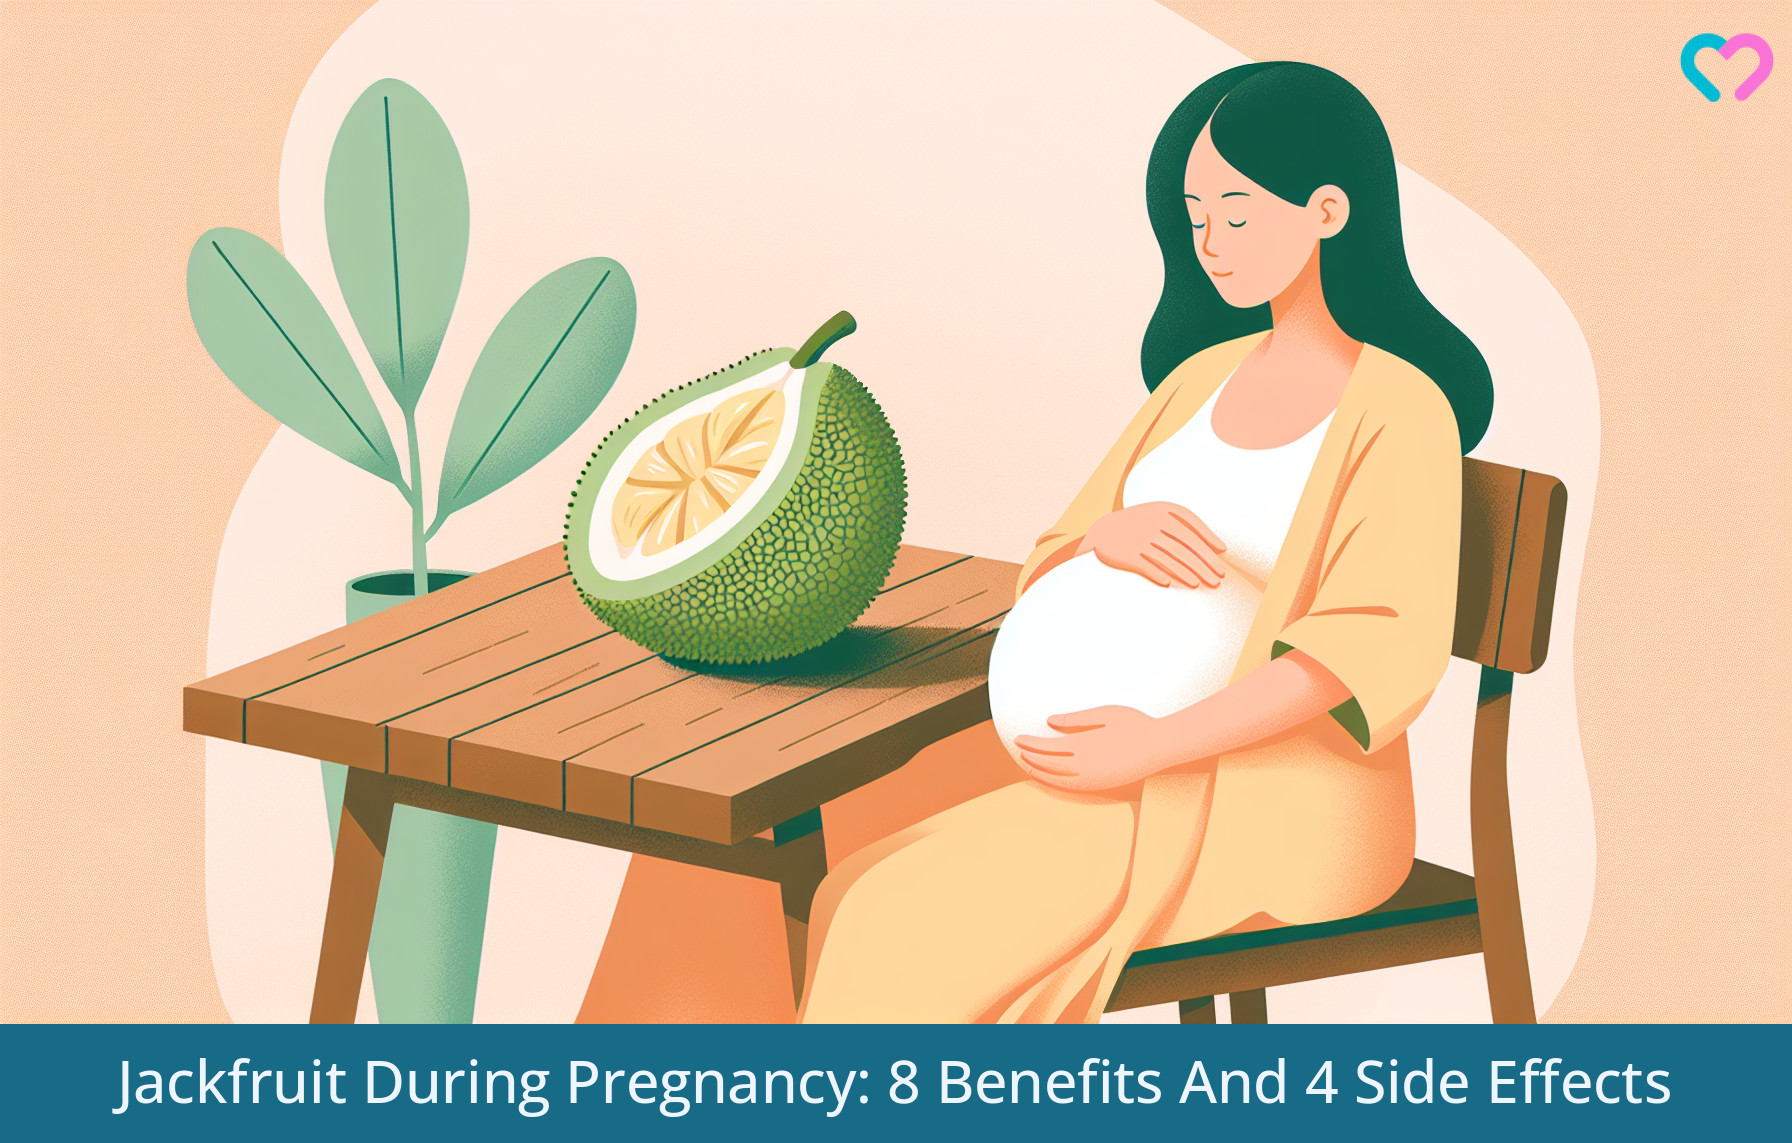 Jackfruit During Pregnancy_illustration